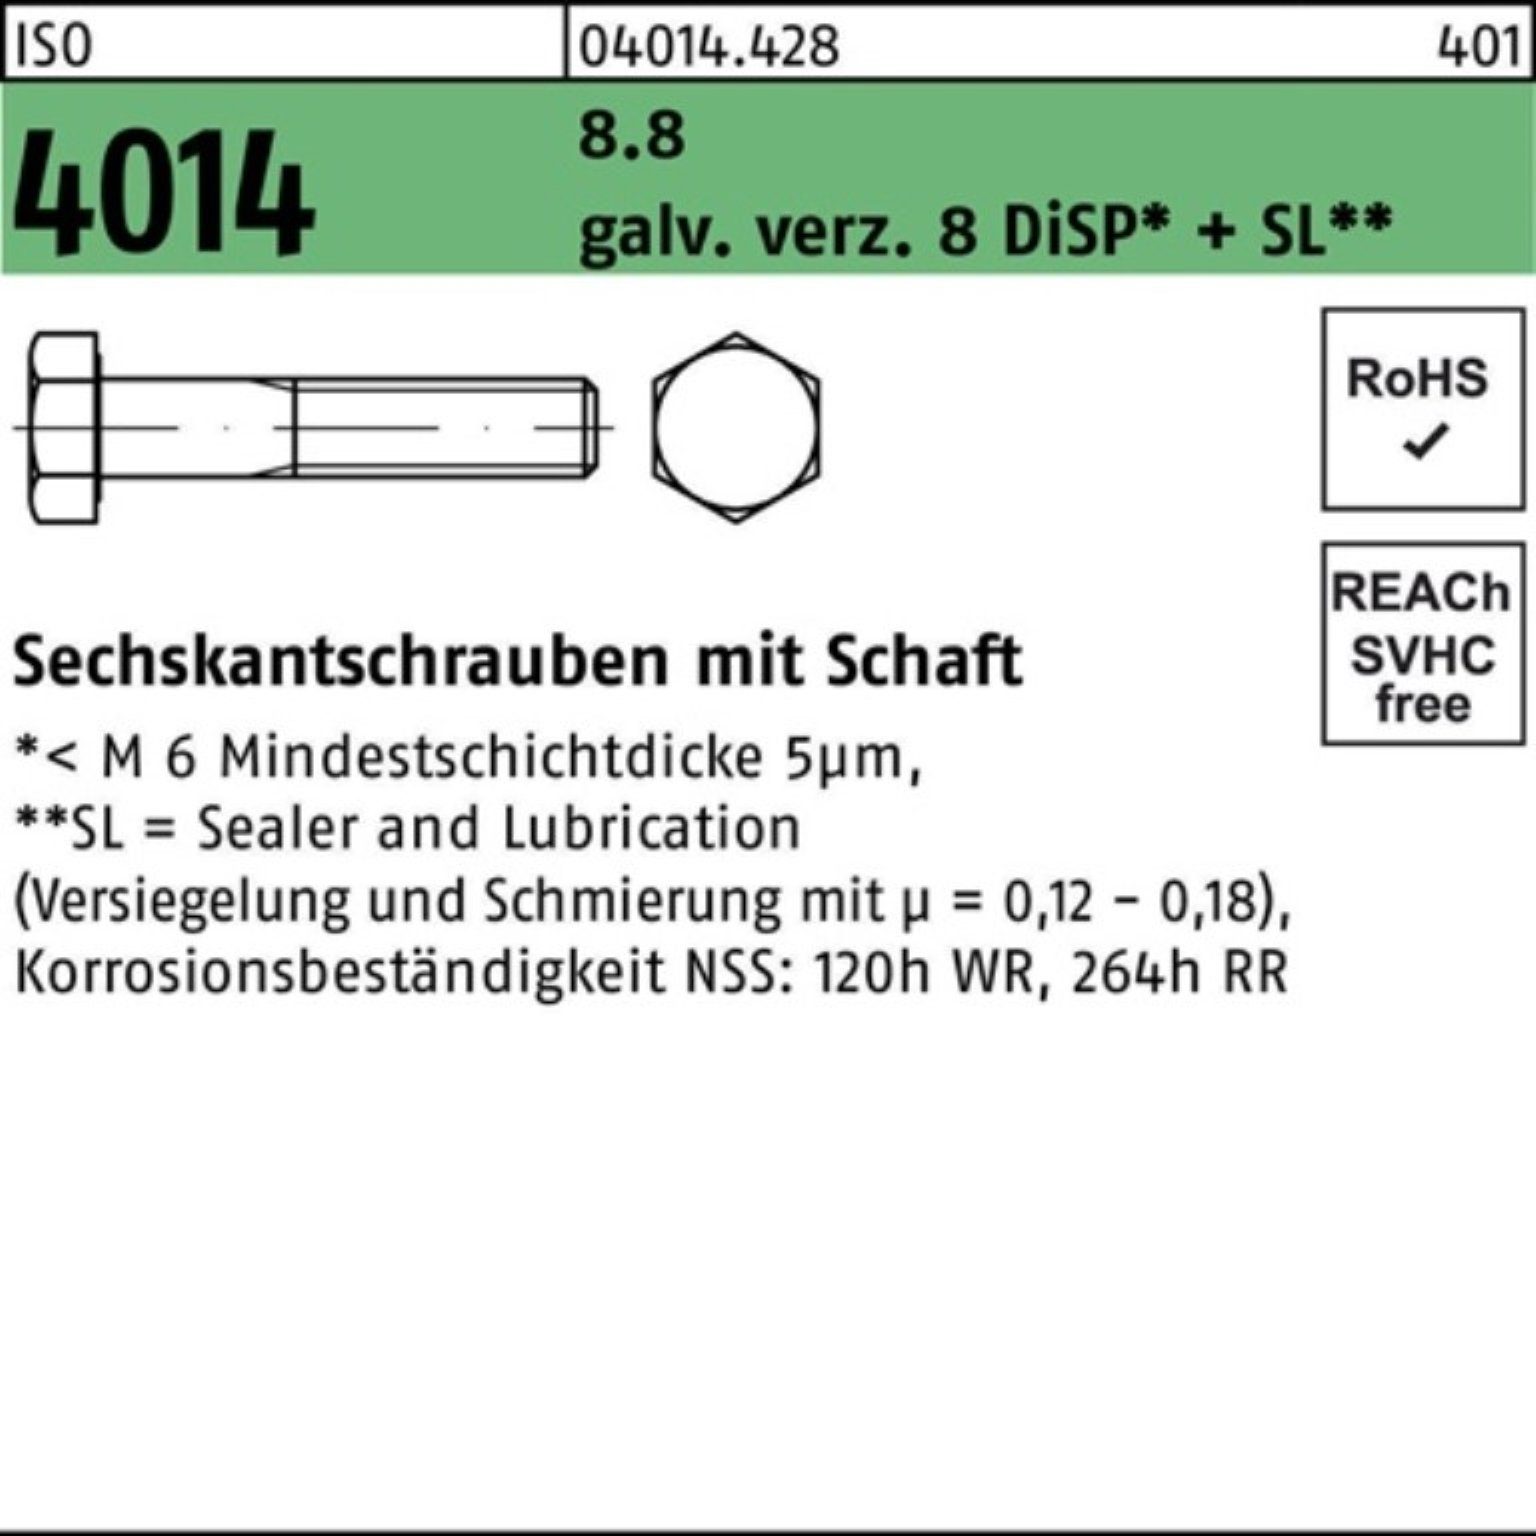 Bufab Sechskantschraube 100er Pack Sechskantschraube ISO 4014 Schaft M12x200 8.8 galv.verz. 8